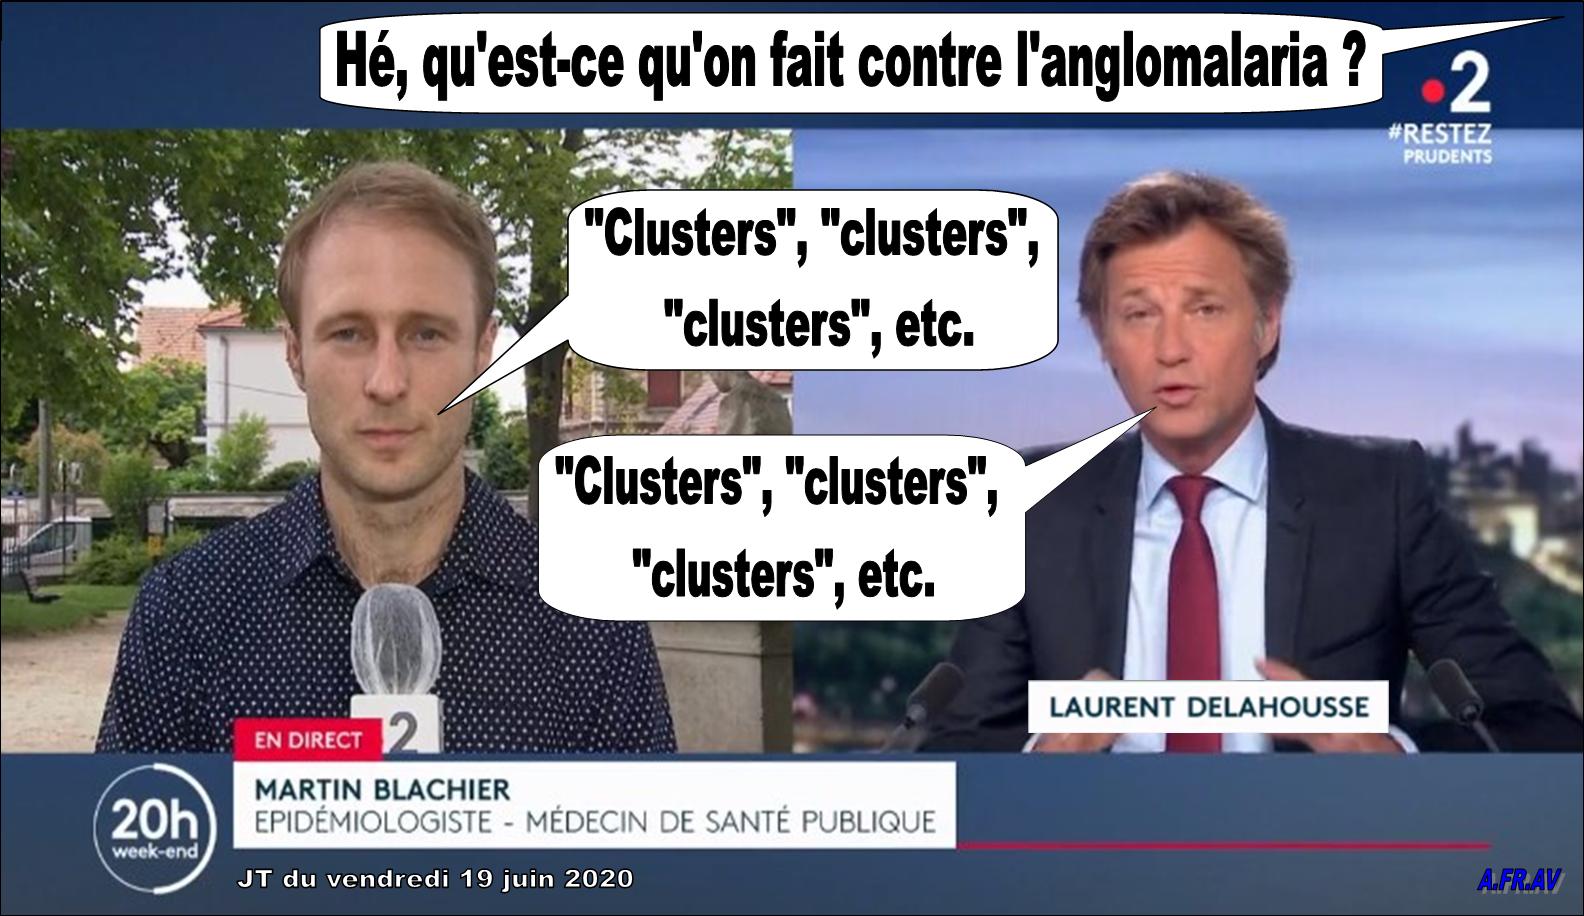 /Laurent Delahousse, Martin Blachier et les foyers épidémiques France 2 JT de 20h